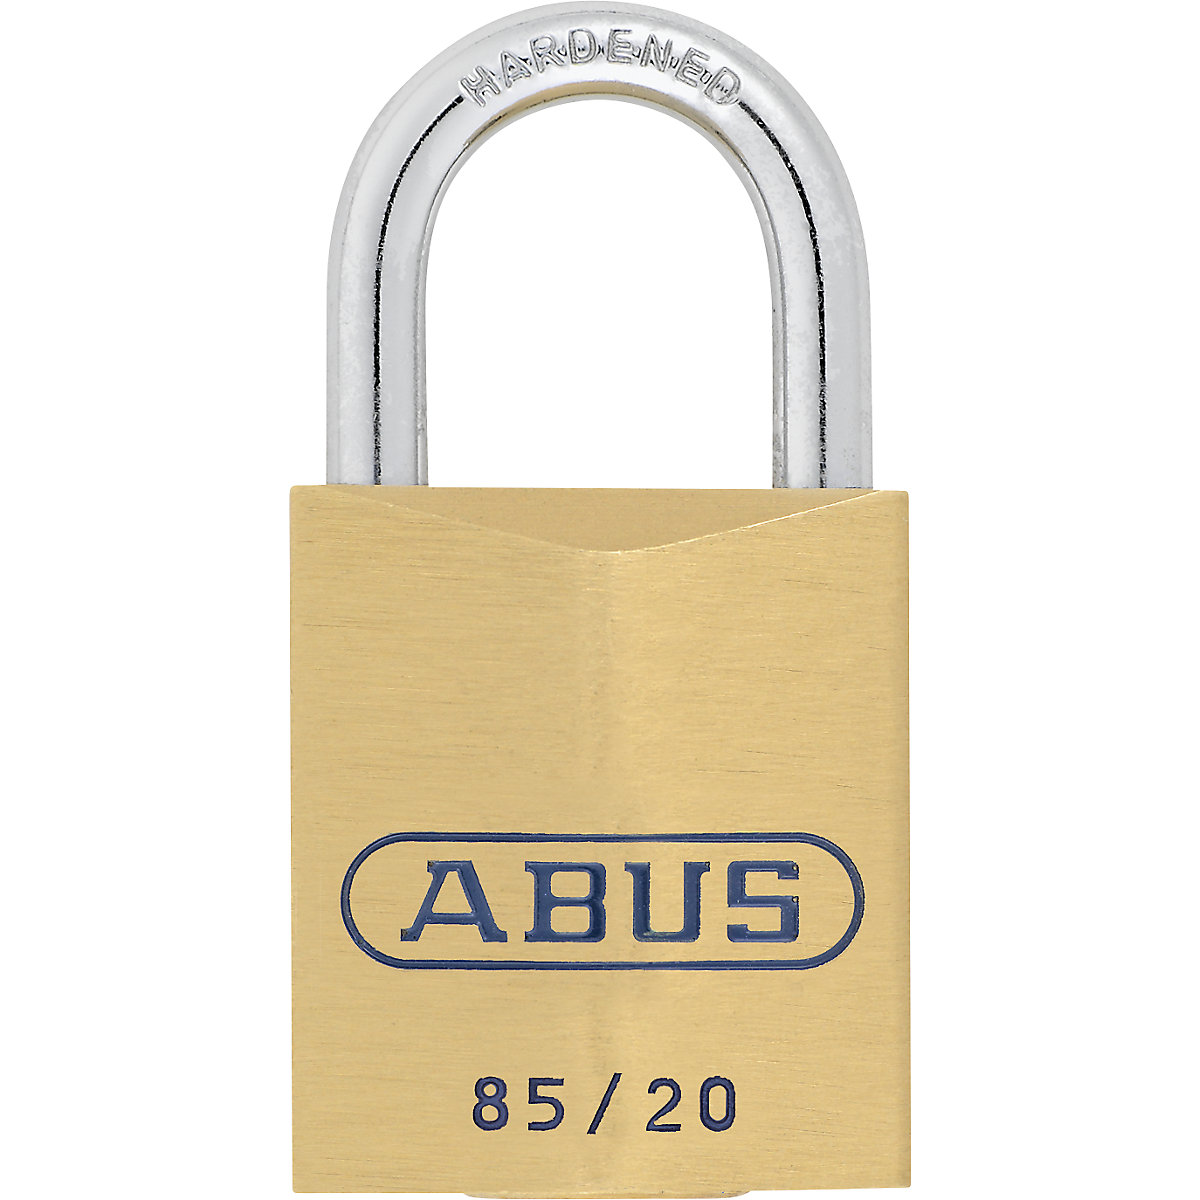 Cadenas – ABUS: 85/20 Lock Tag, lot de 6